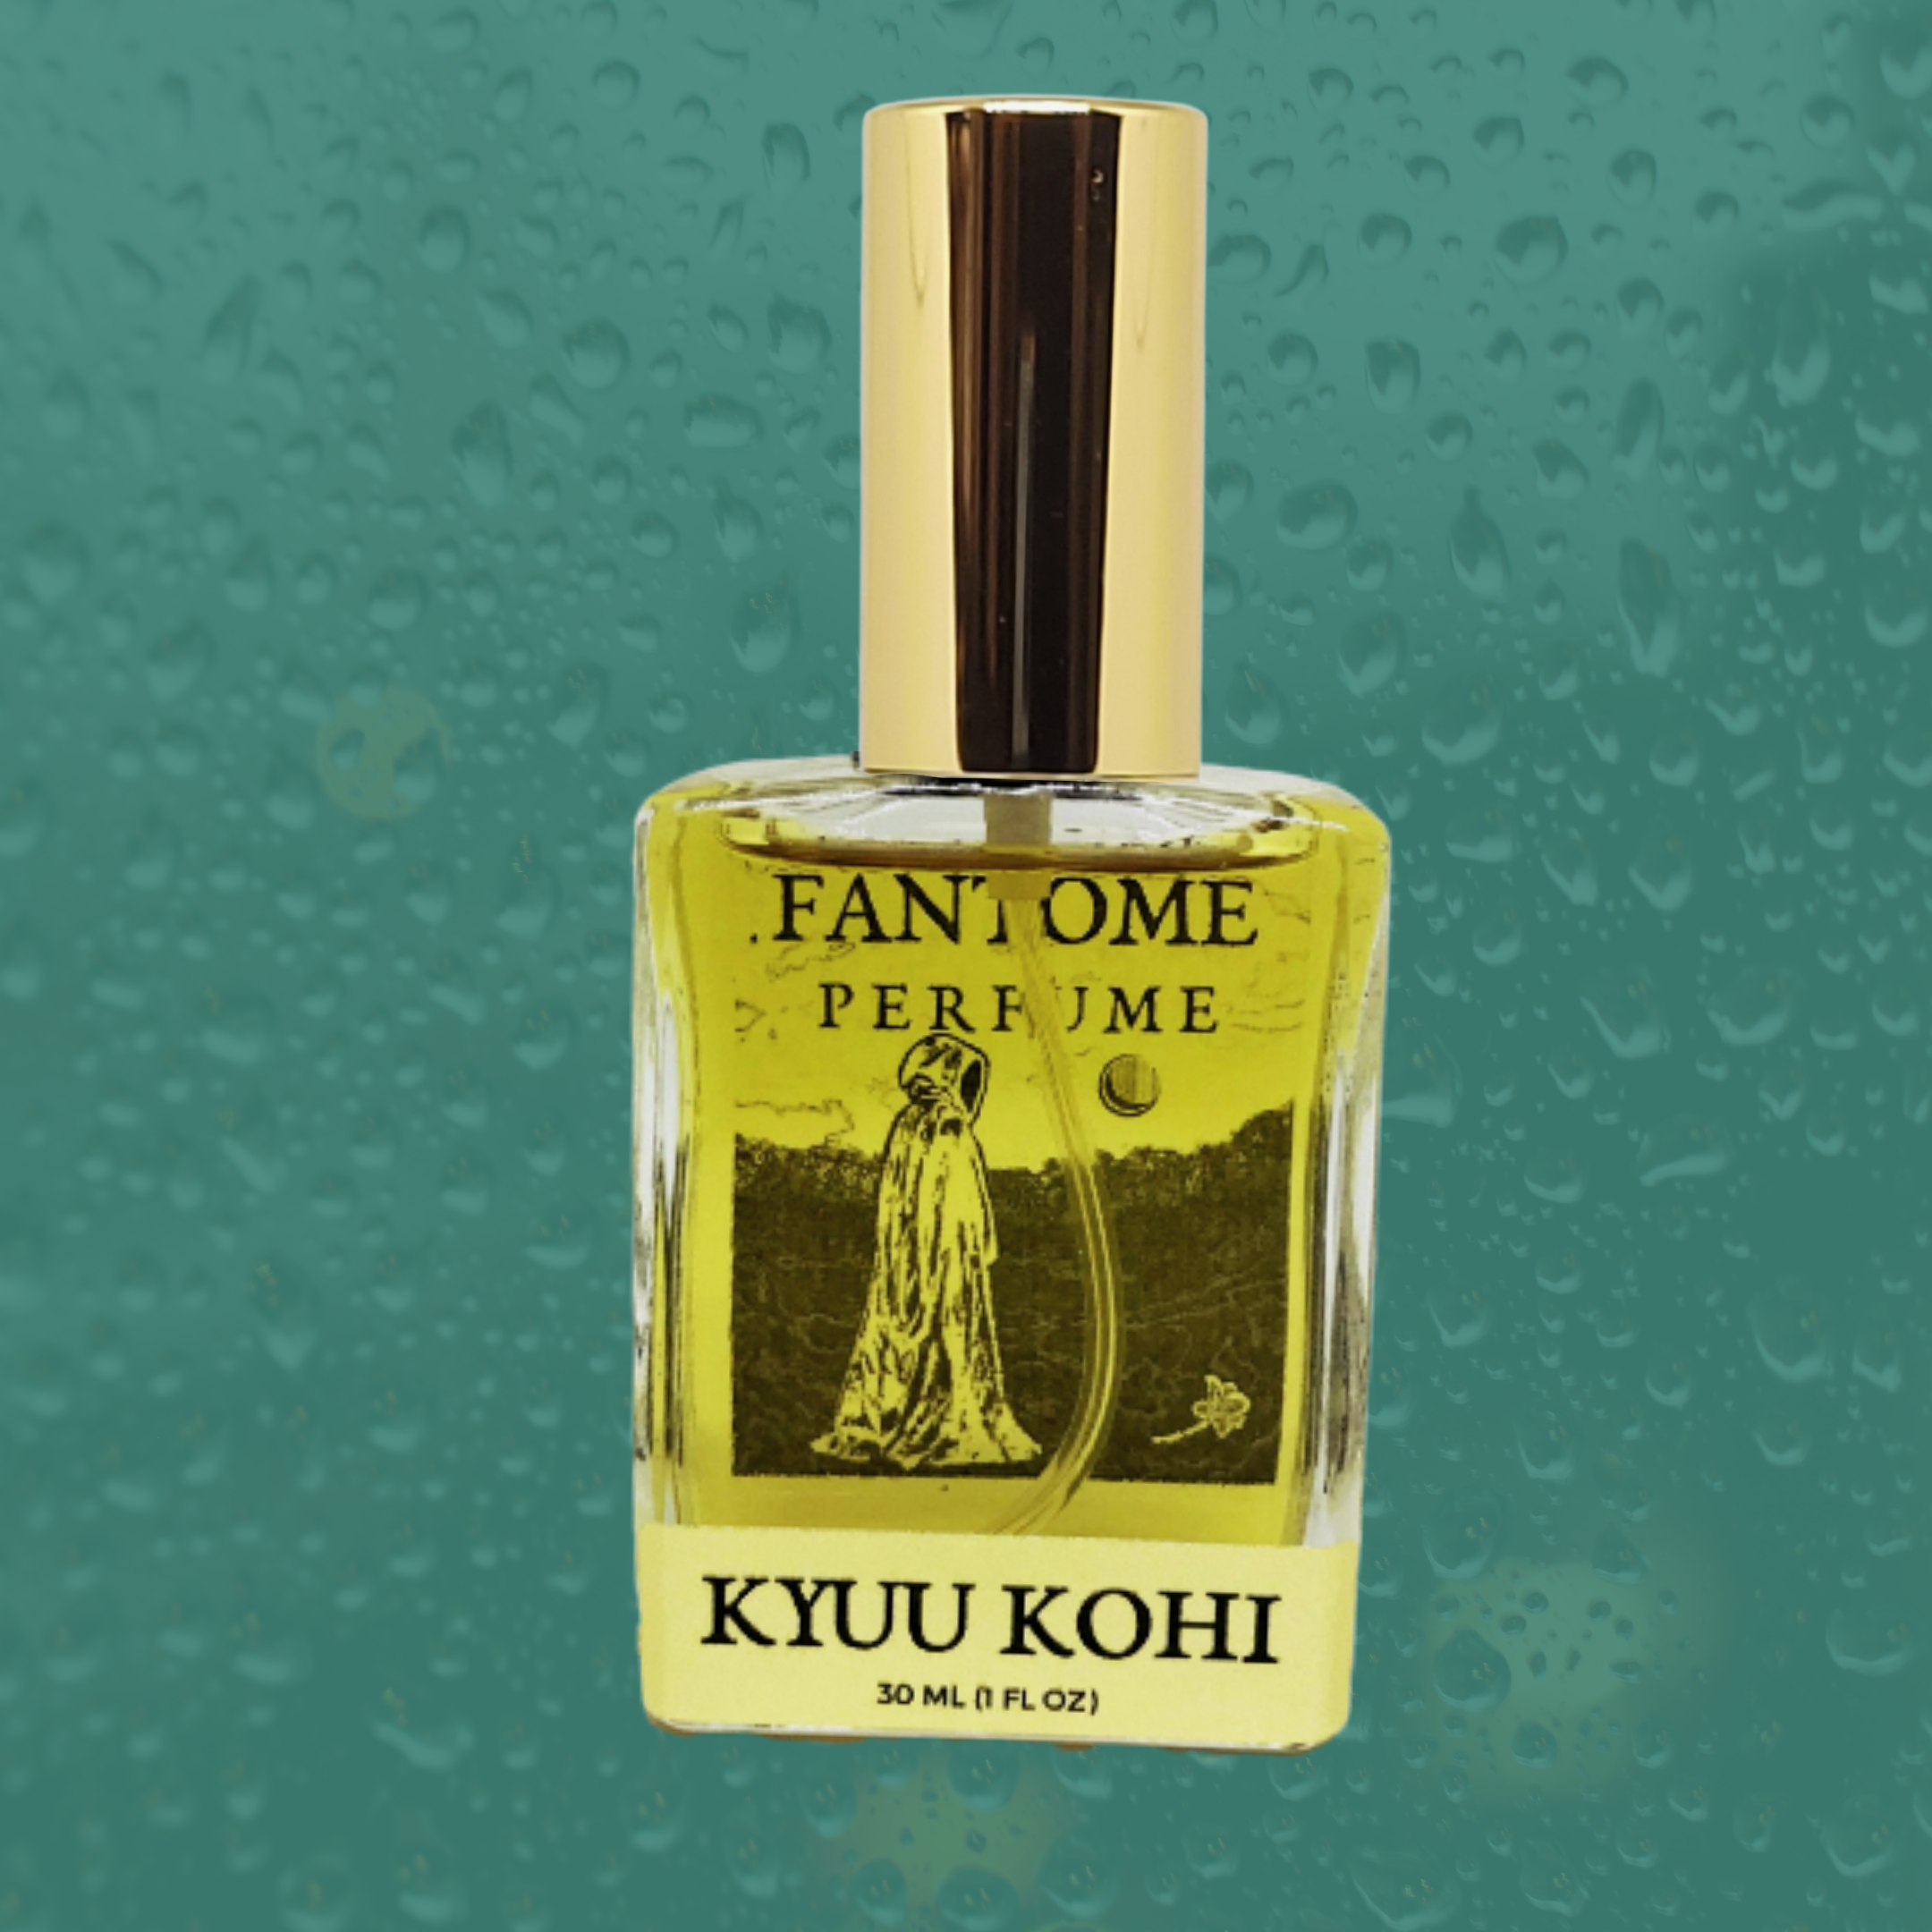 Kyuu Kohi Extrait de Parfum